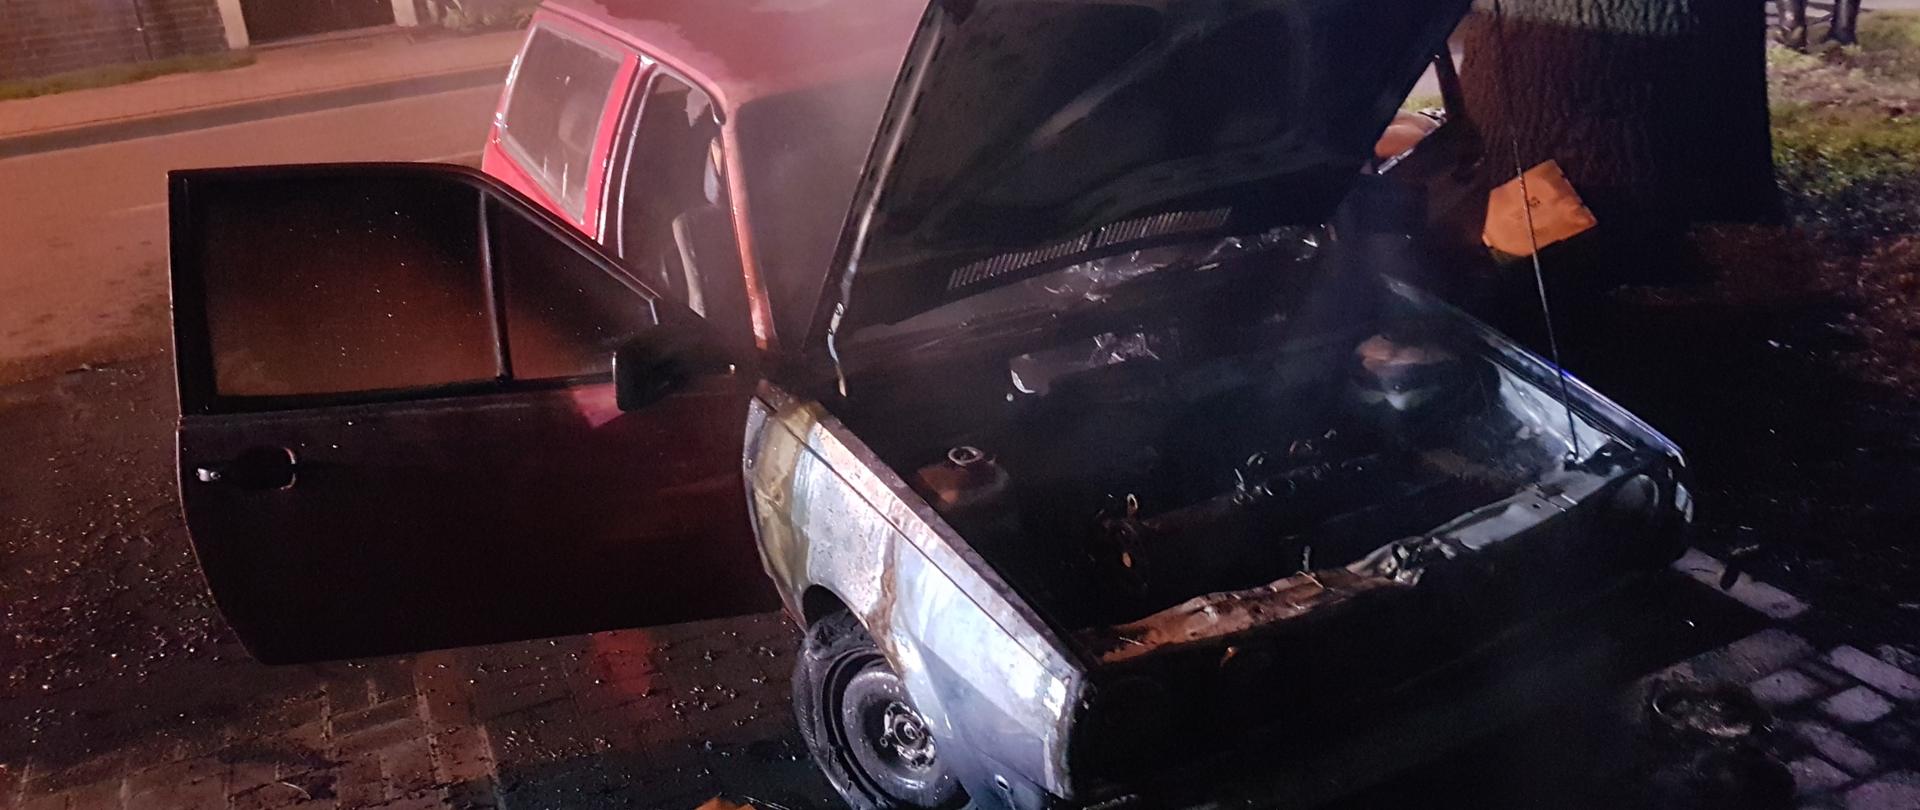 Na zdjęciu spalony samochód osobowy stoi na parkingu. Z tyłu budynek. Pora nocna